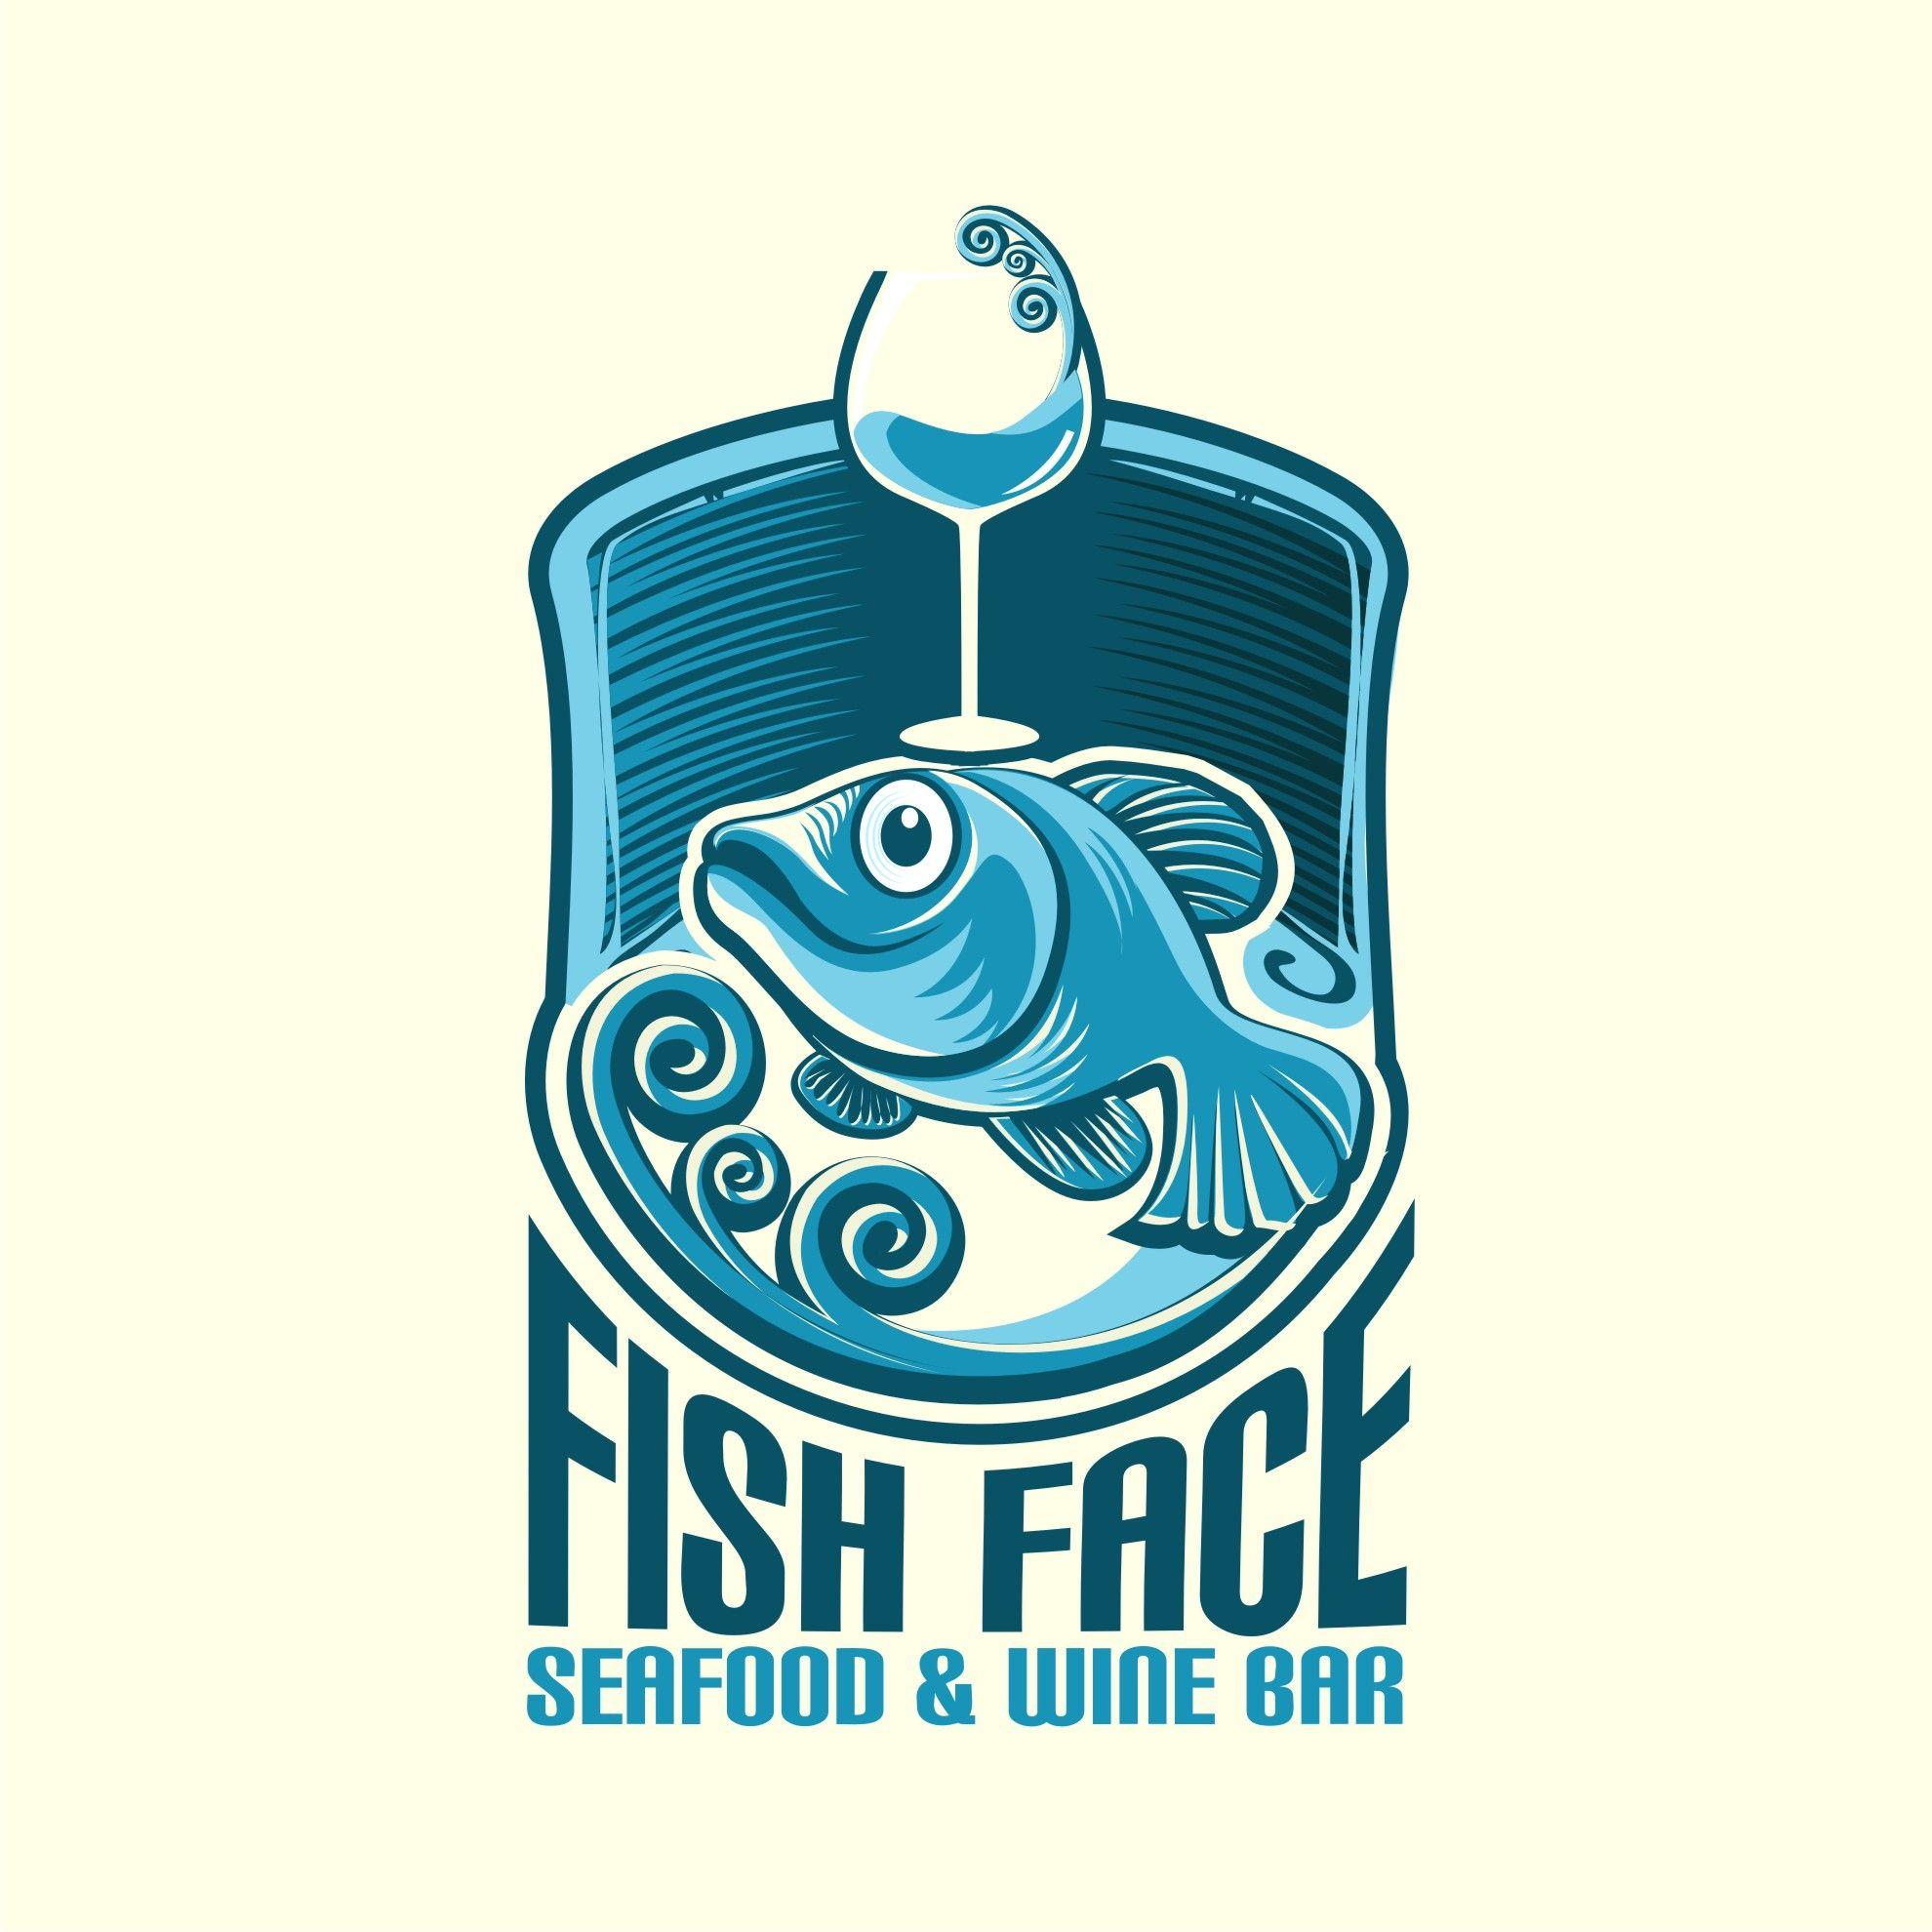 Seafood Restaurant Logo - Modern, Elegant, Seafood Restaurant Logo Design for Fish Face ...